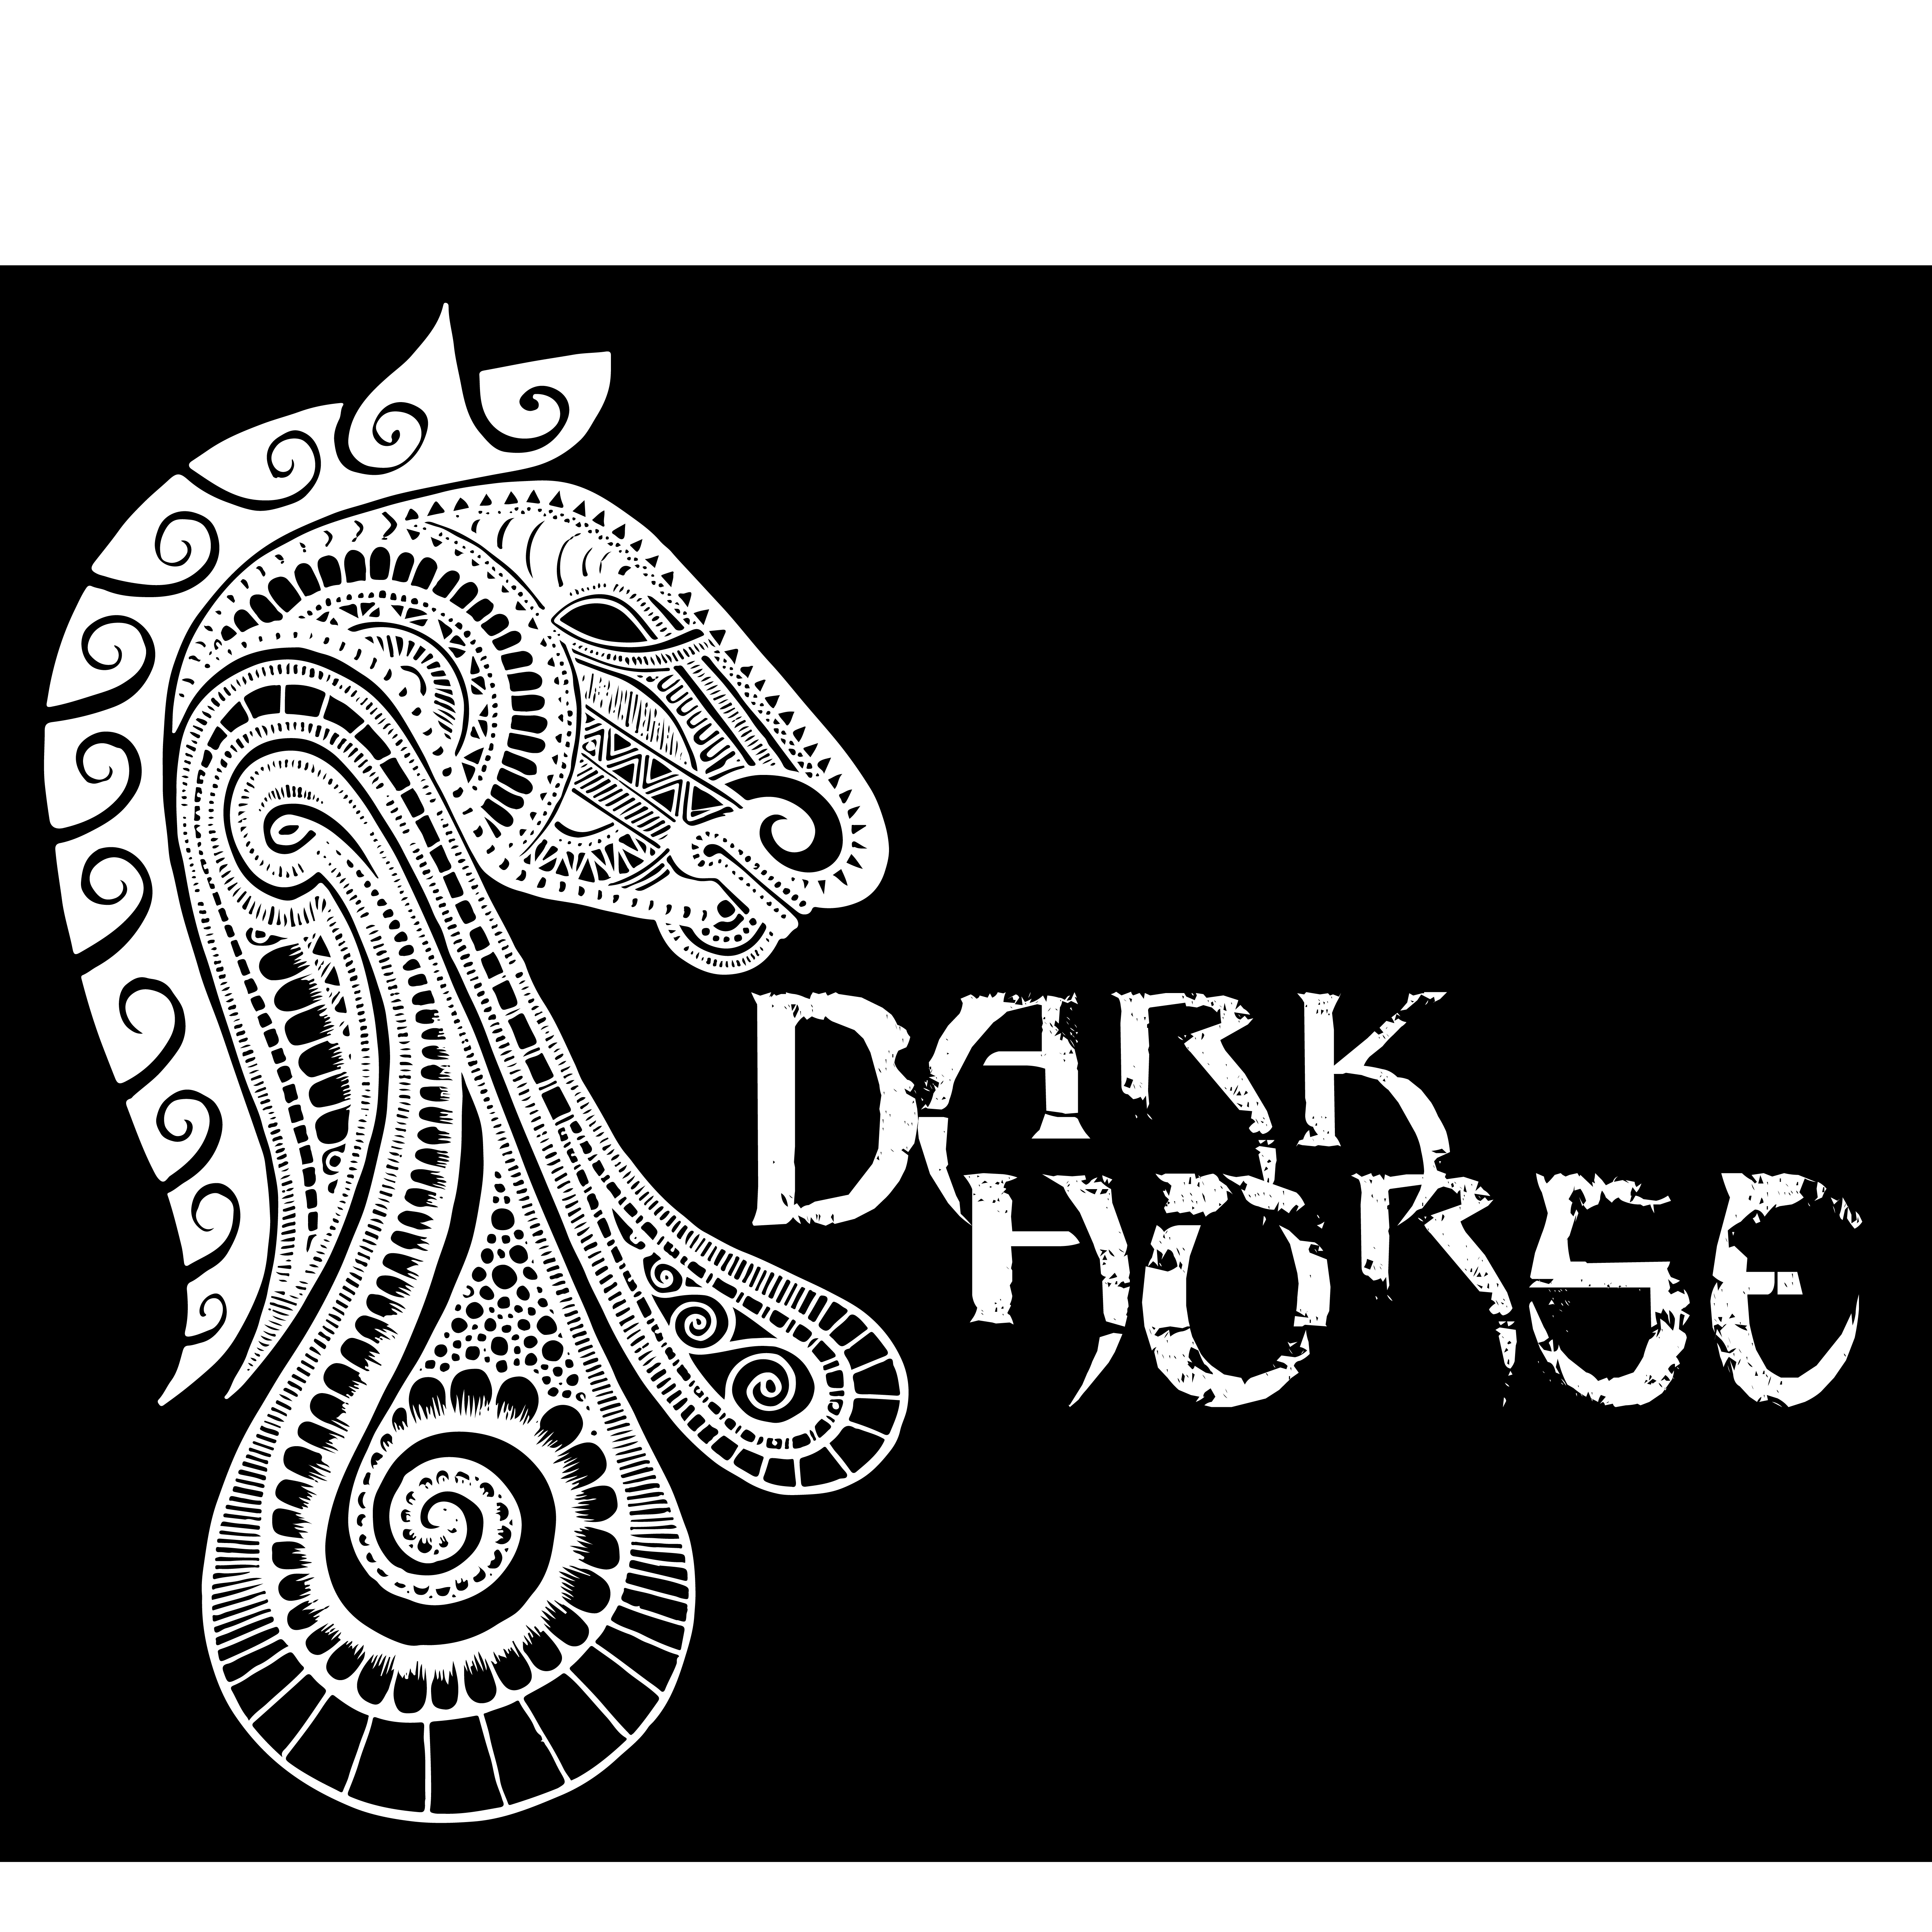 Dark Horse Music Radio